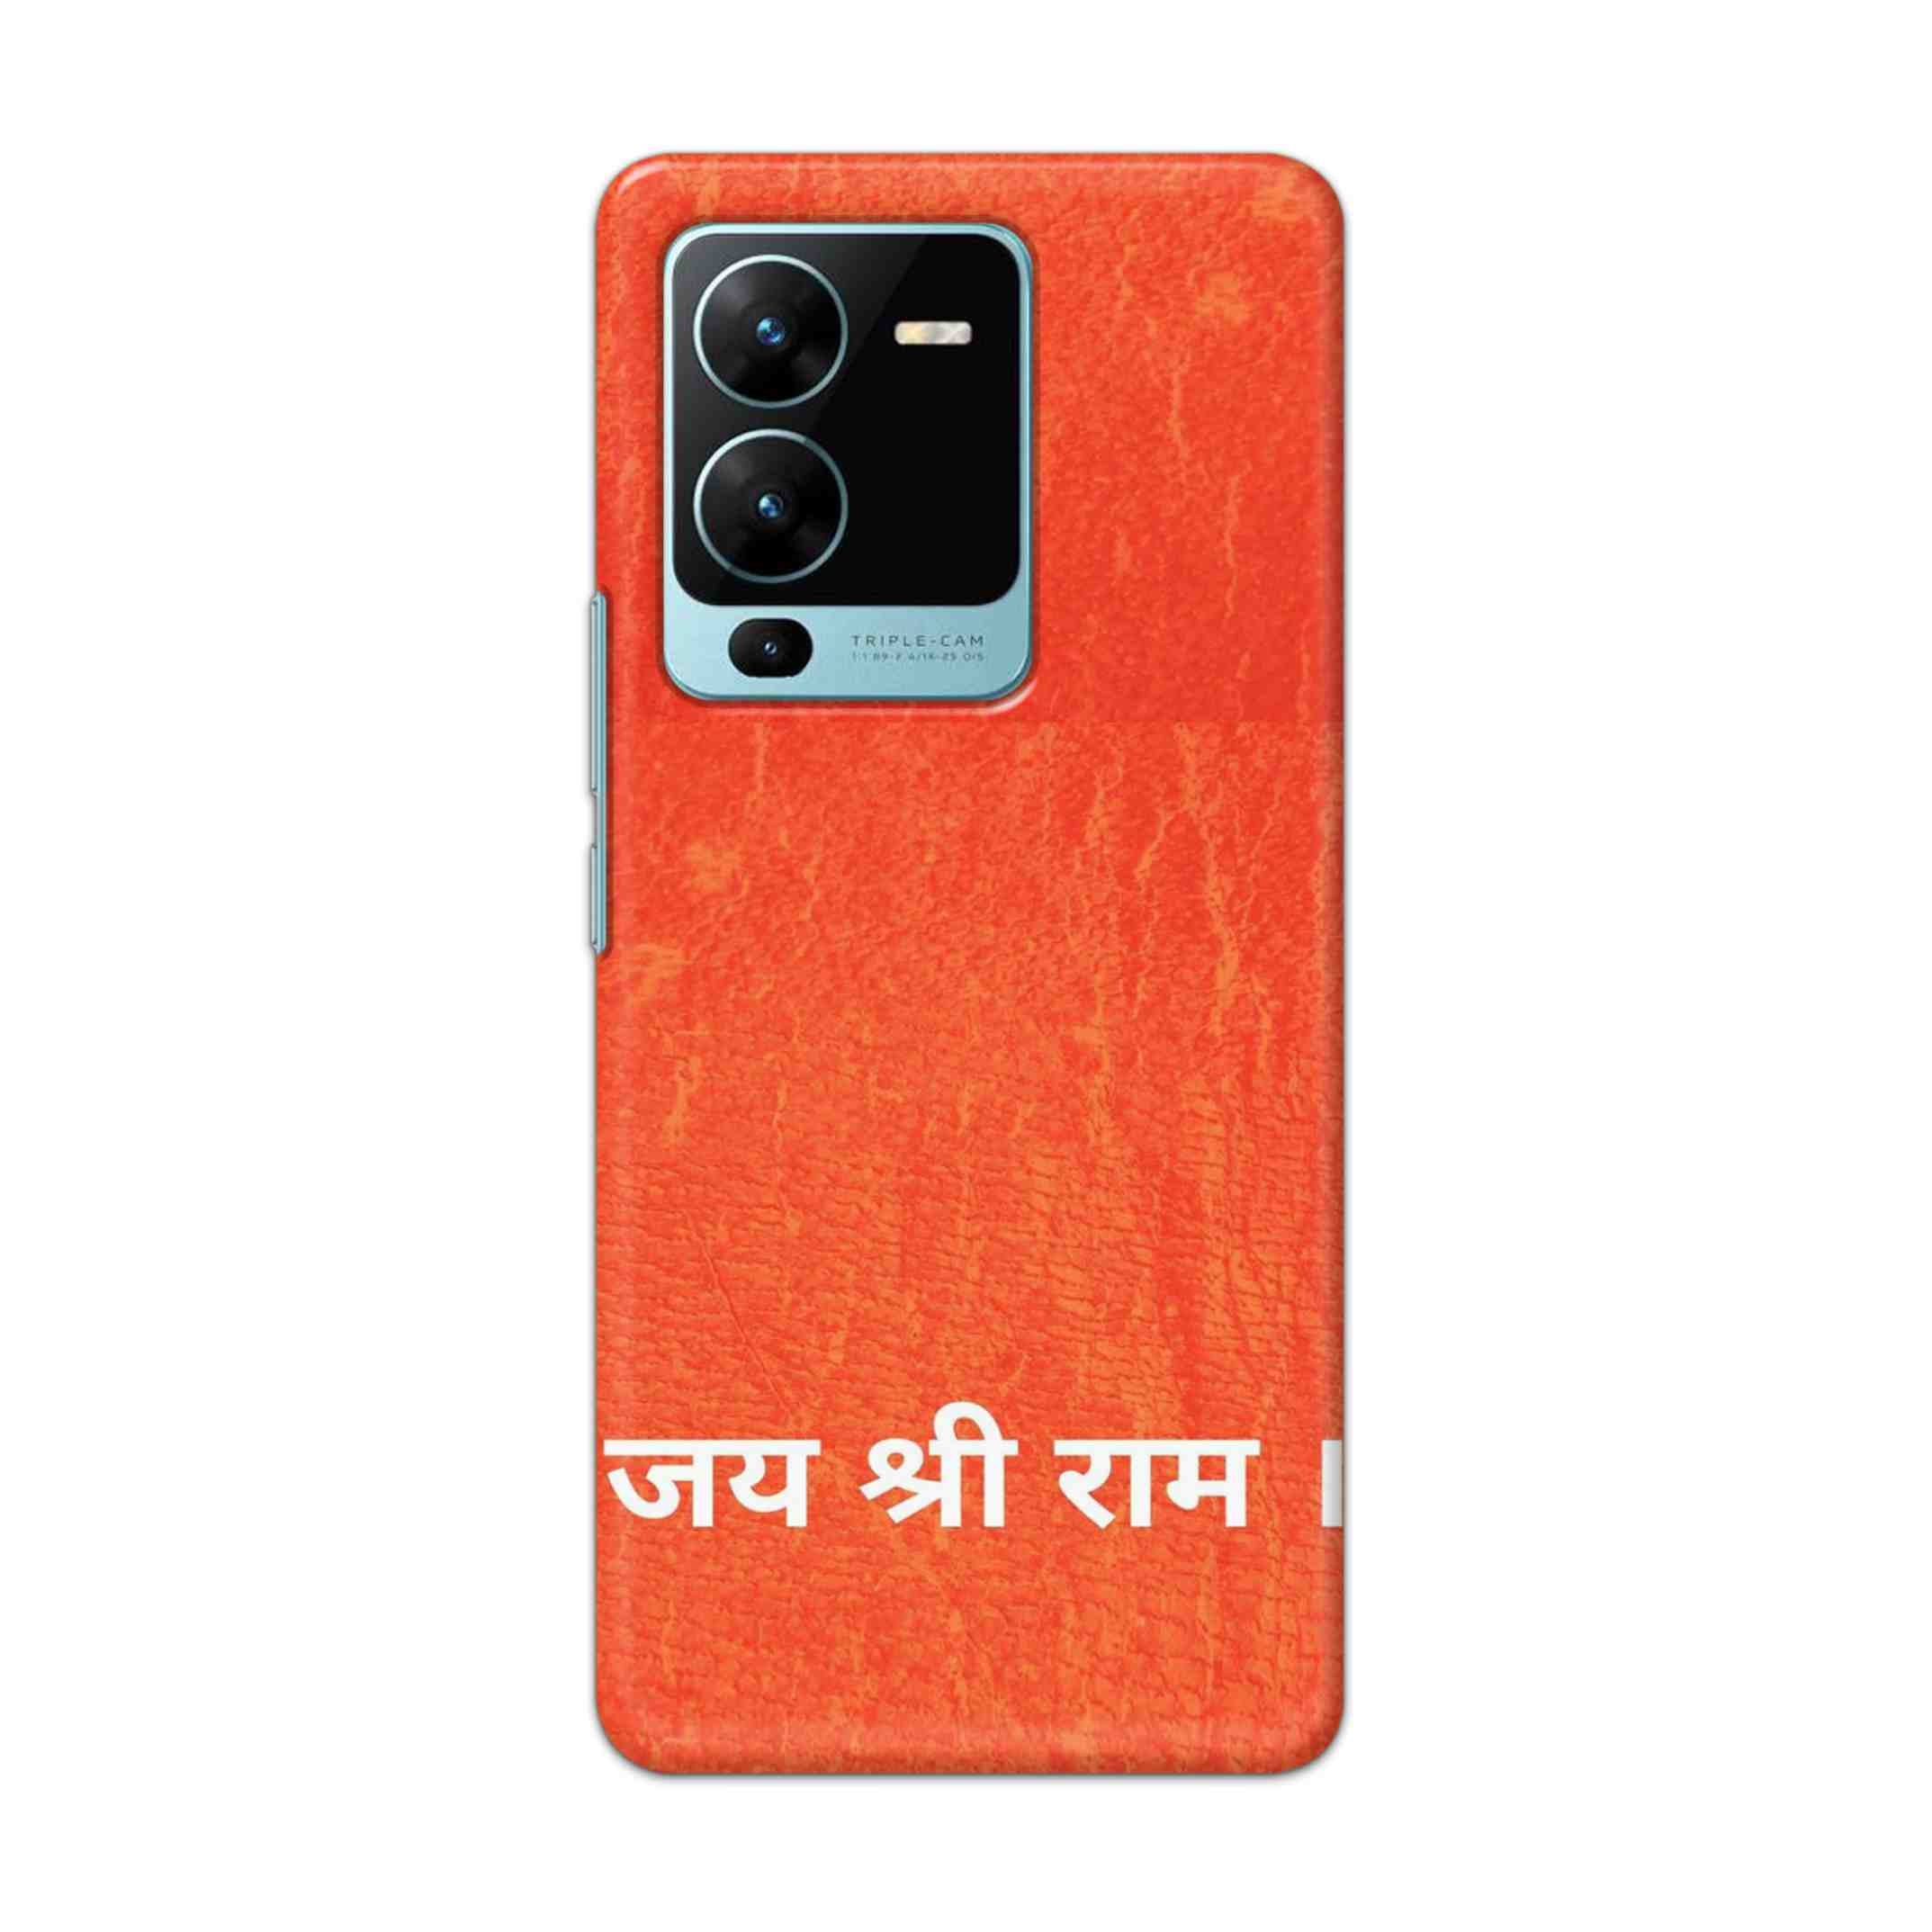 Buy Jai Shree Ram Hard Back Mobile Phone Case Cover For Vivo V25 Pro Online